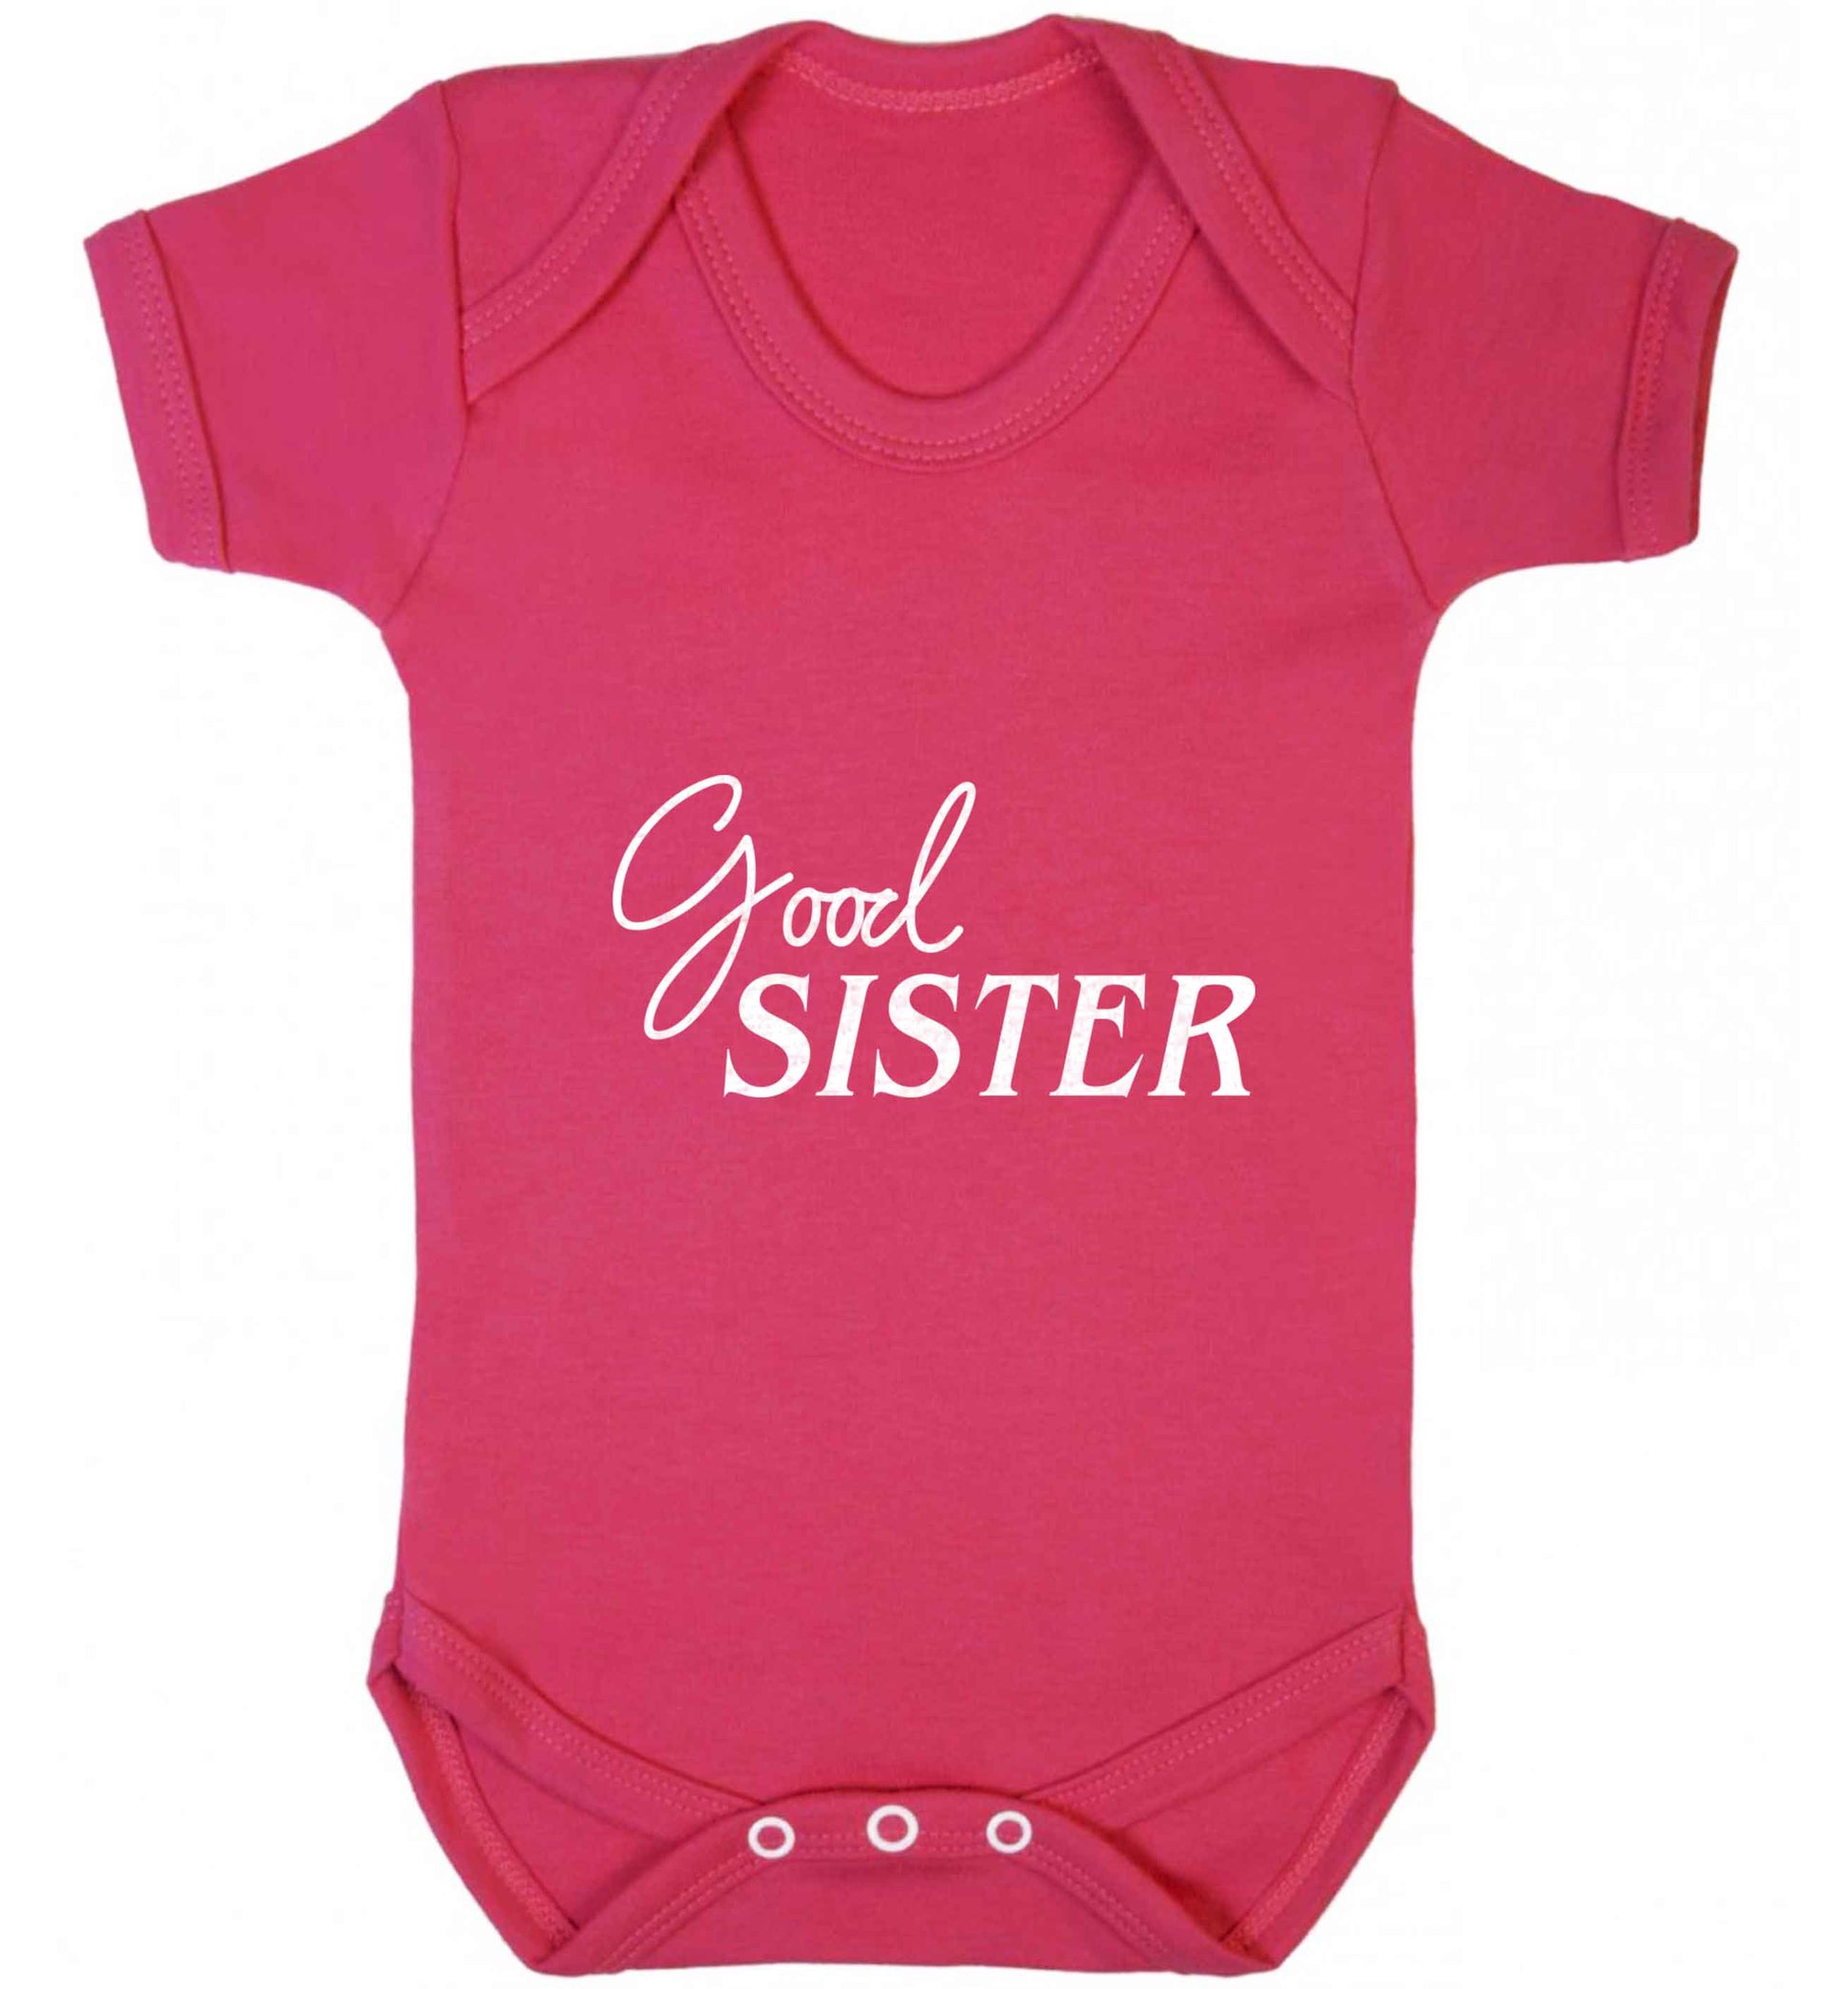 Good sister baby vest dark pink 18-24 months